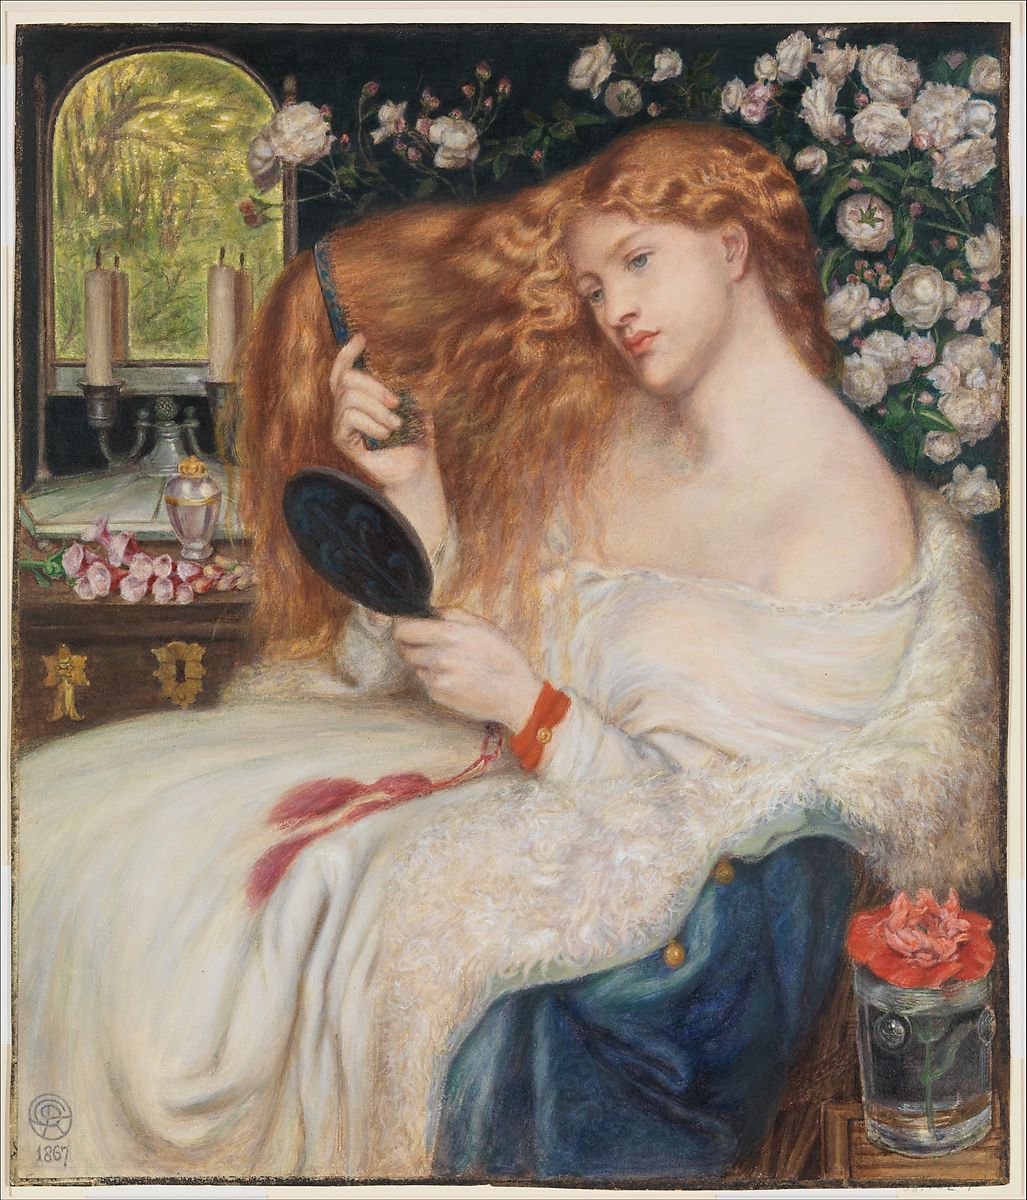 Lady Lilith (1867), by Dante Gabriel Rossetti, model Fanny Cornforth)